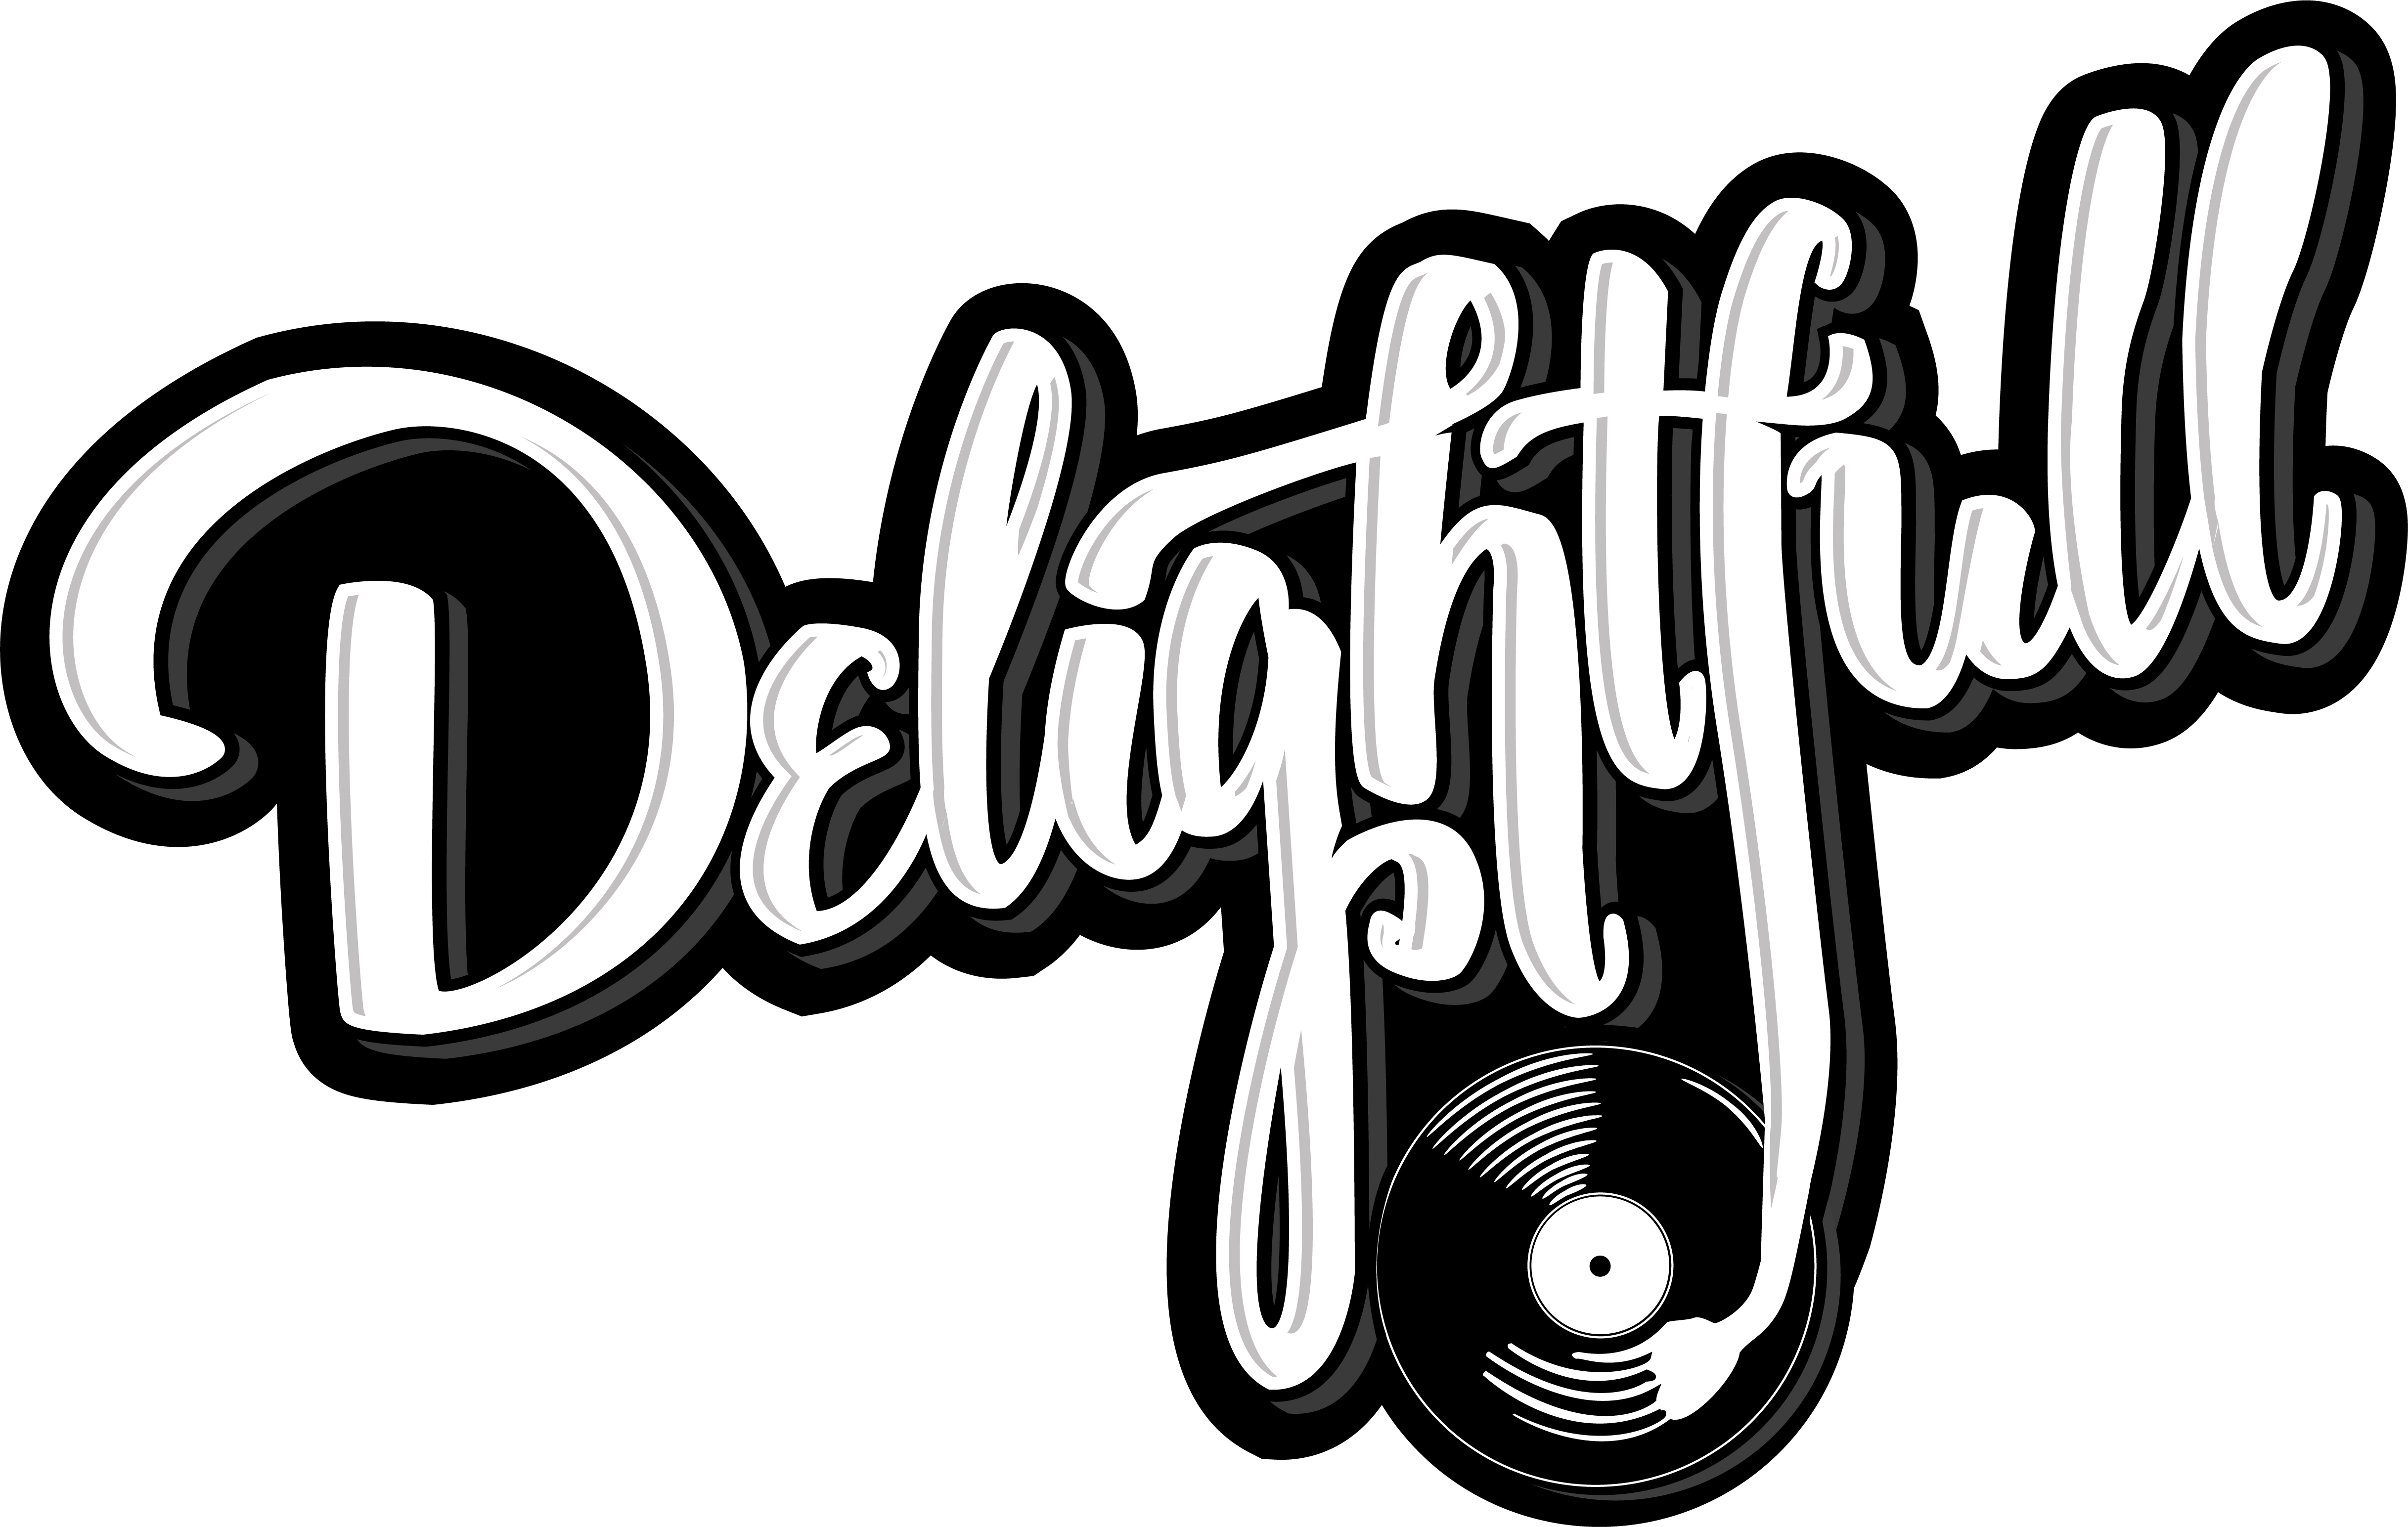 DJ DELightfull